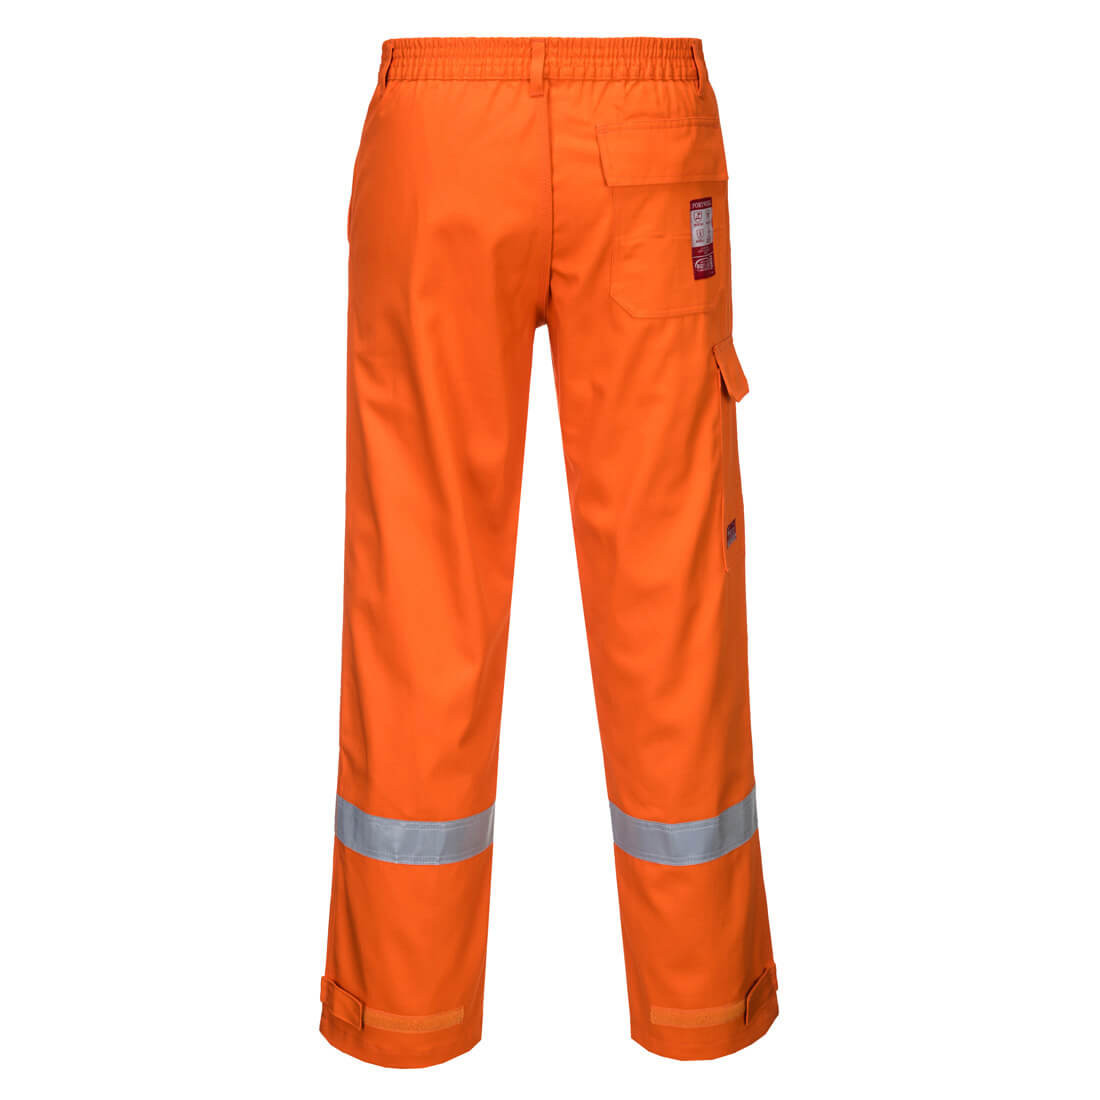 Pantaloni Bizflame Plus - Abbigliamento di protezione